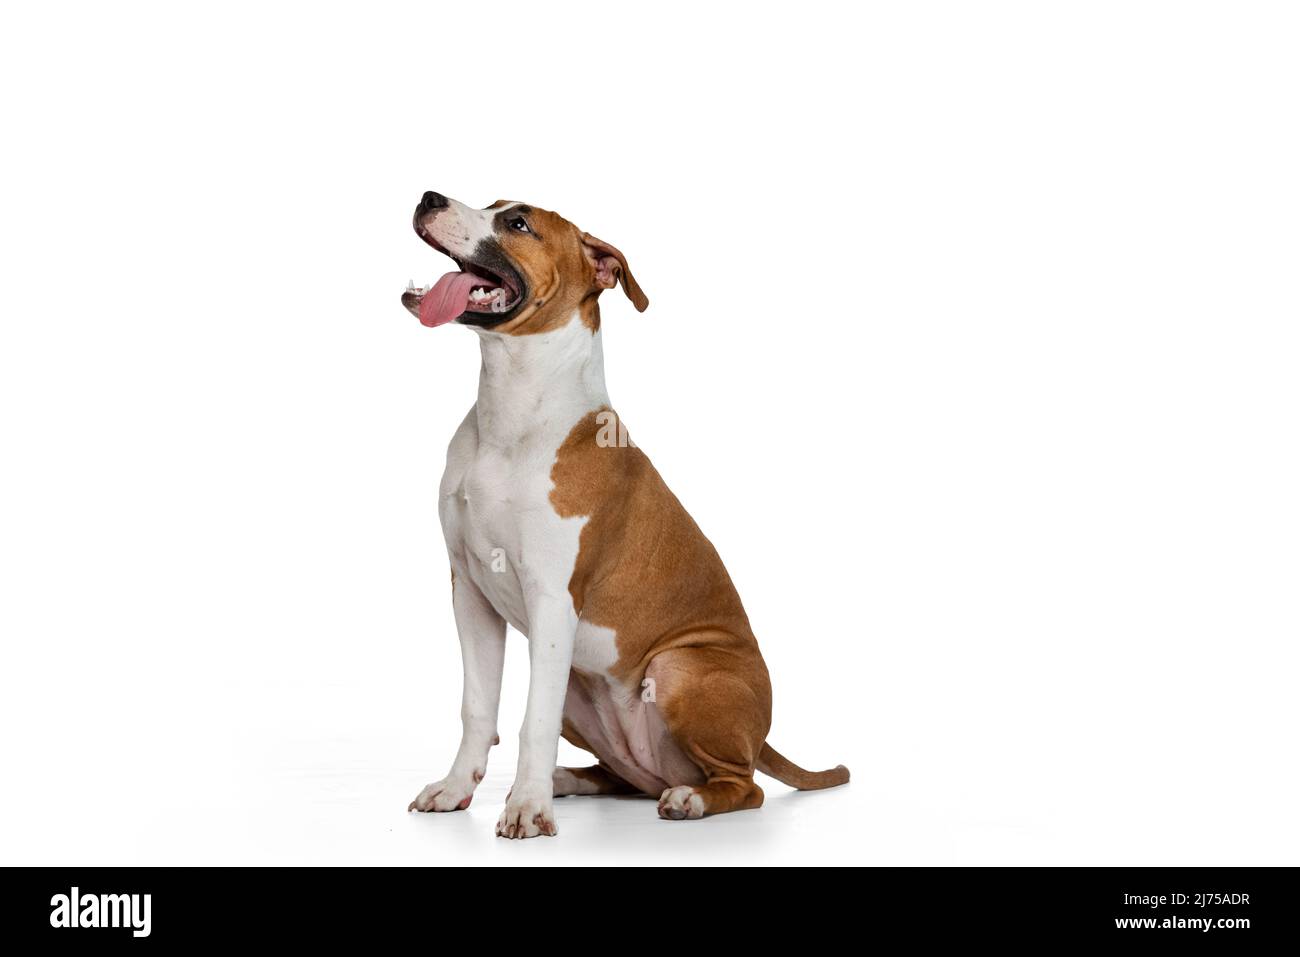 Porträt von niedlichen Welpen Staffordshire Terrier Hund isoliert auf weißem Studio-Hintergrund. Sieht glücklich, erfreut aus. Stockfoto